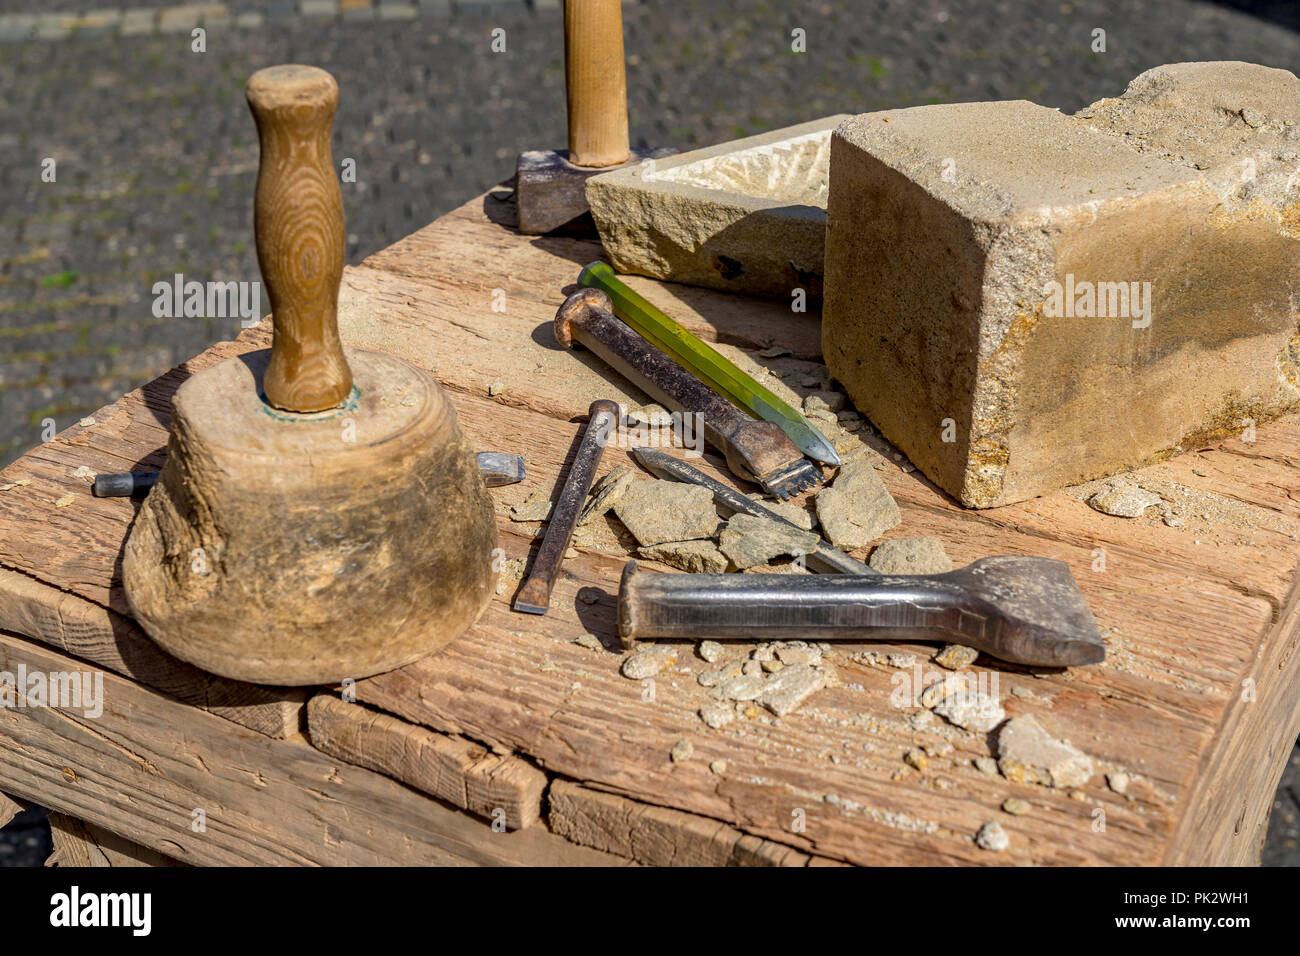 Steinmetz Werkzeuge Hammer und Meißel im Freien Stockfotografie - Alamy